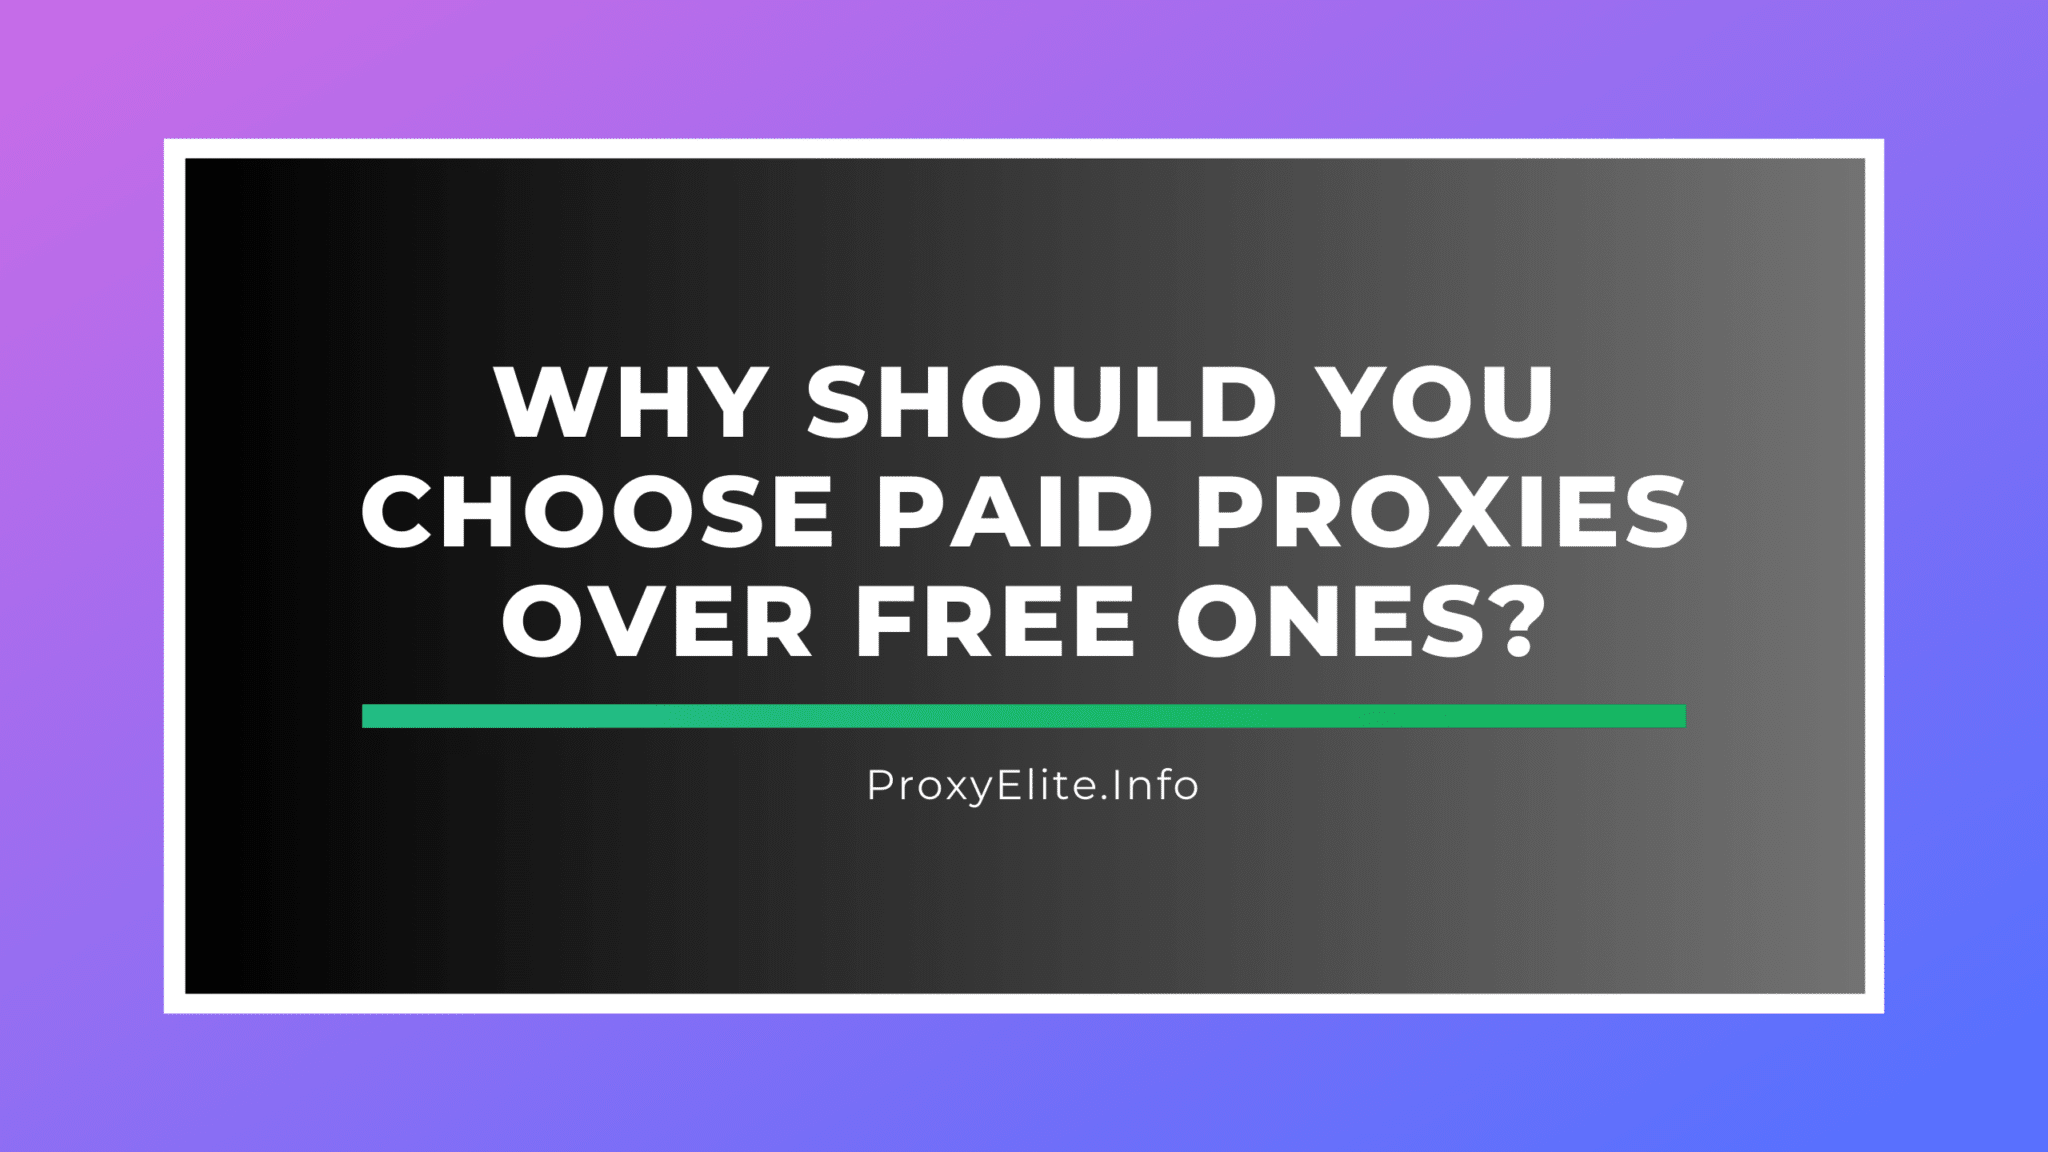 Tại sao bạn nên chọn proxy trả phí thay vì proxy miễn phí?